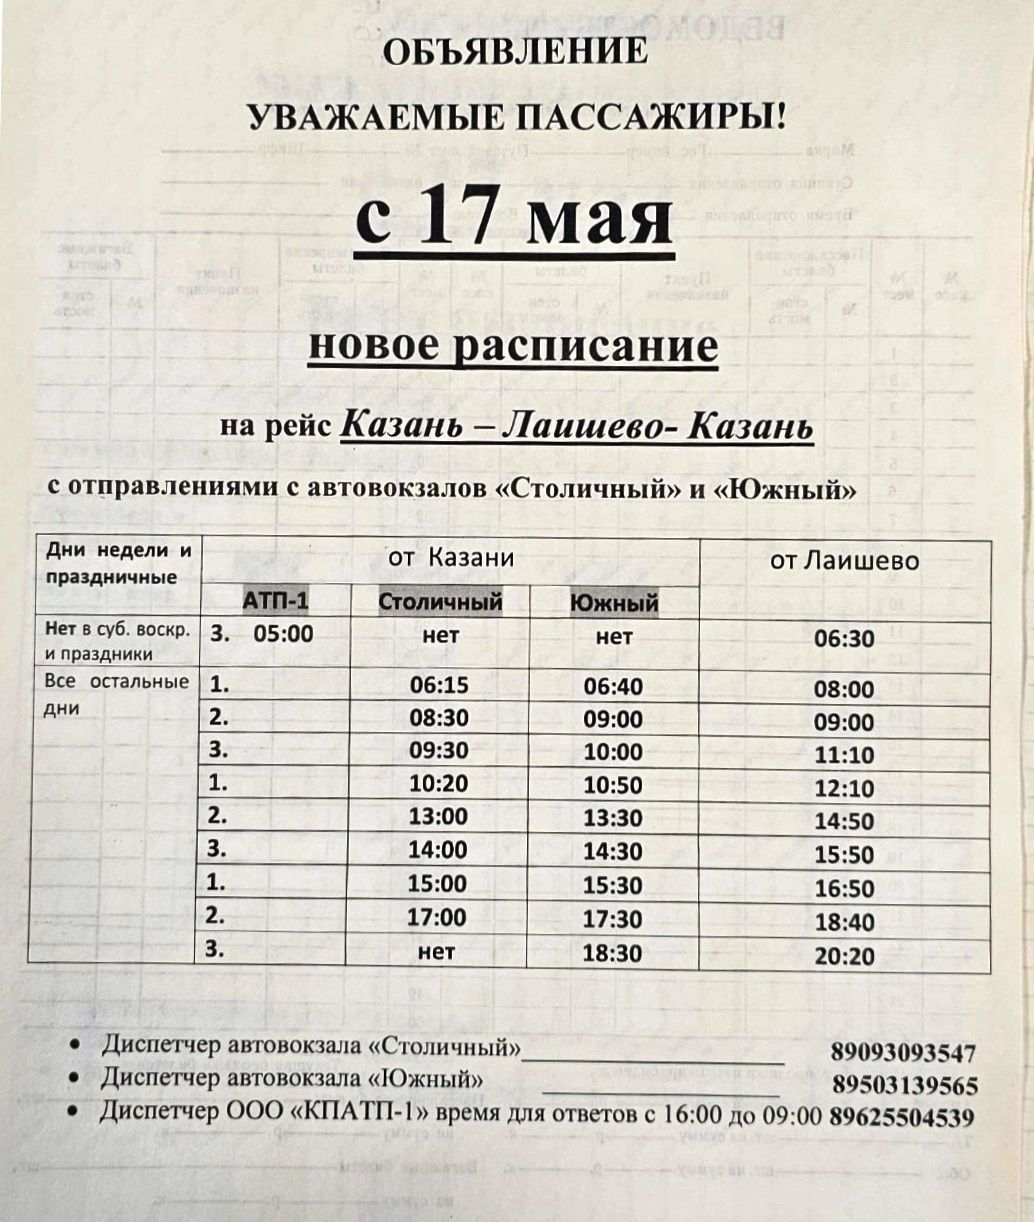 Расписание рейса автобуса Казань — Лаишево — Казань  изменится с 17 мая